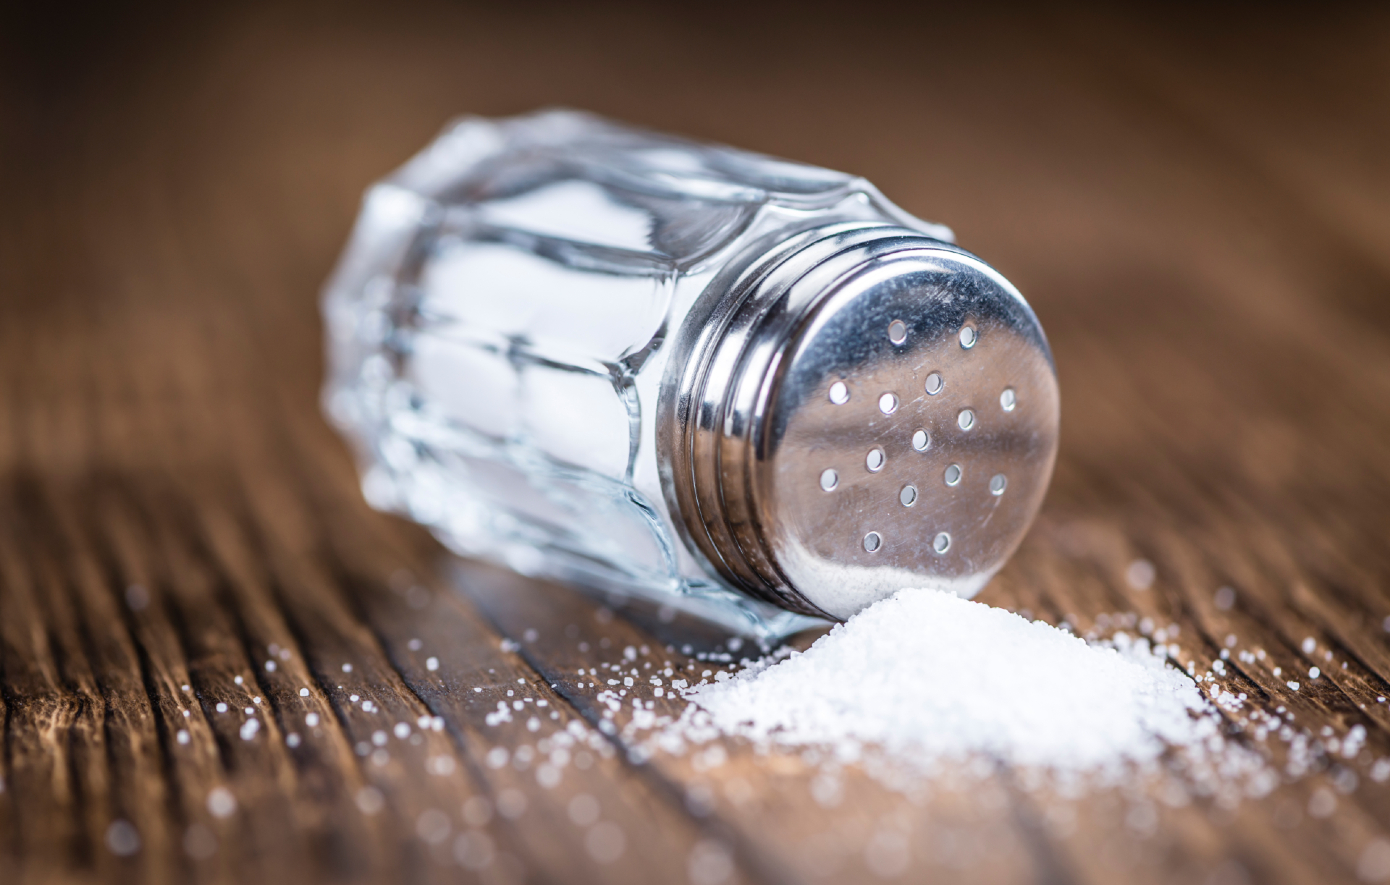 Πώς θα περιορίσετε το αλάτι, έναν από τους βασικούς ενόχους για τις καρδιακές παθήσεις